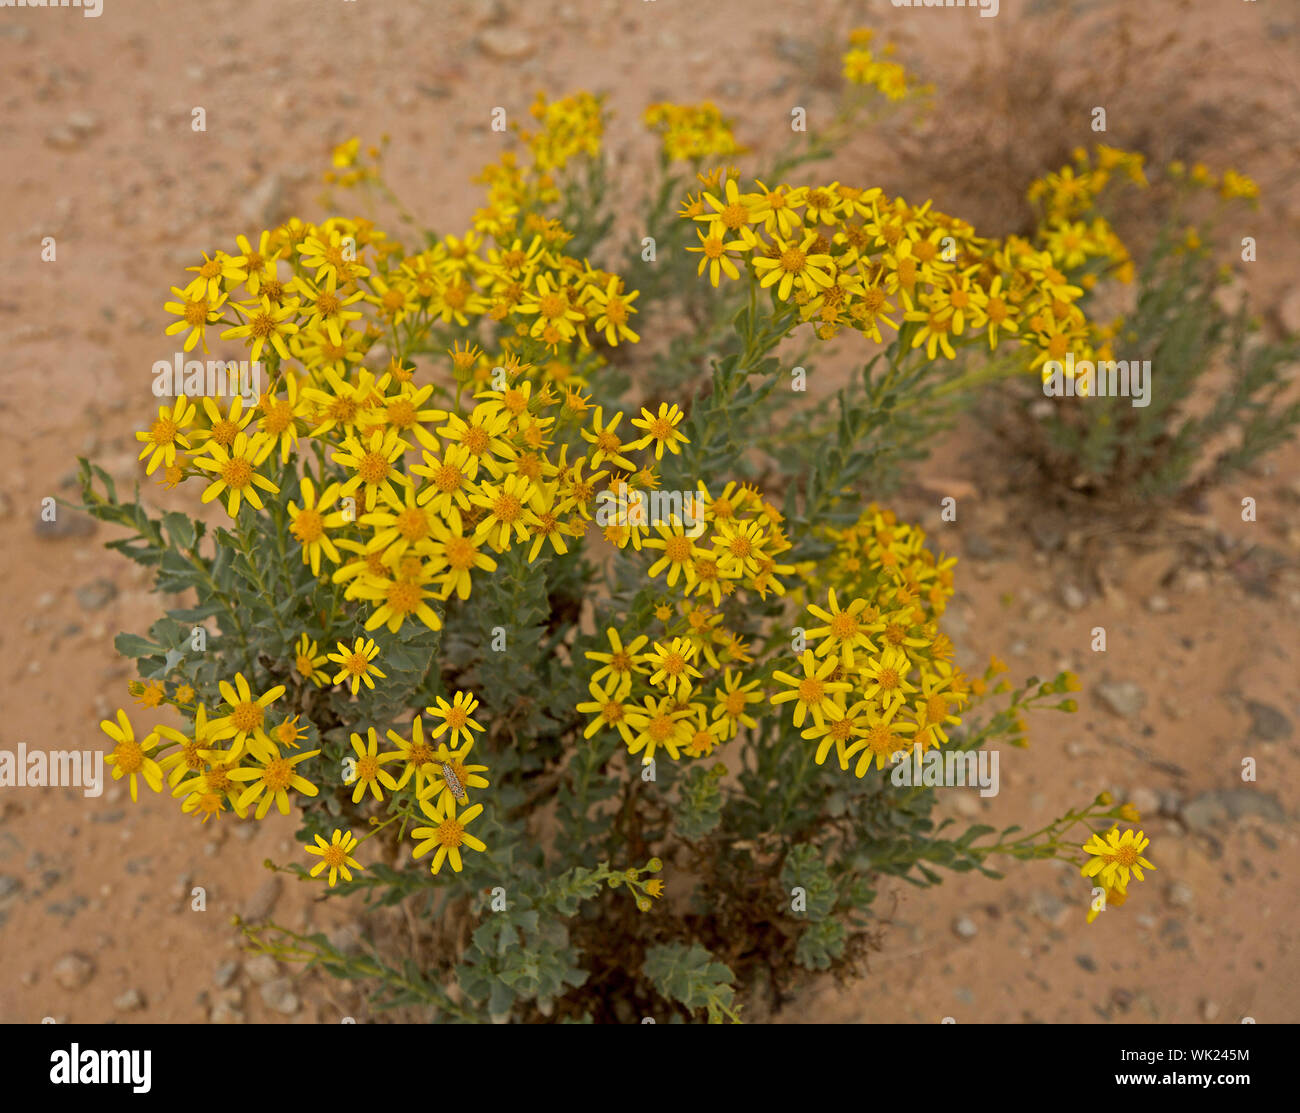 Cluster von gelben Blüten & grünes Laub von Senecio Magnificus, auffällige Kreuzkraut, gegen den Hintergrund des sandigen Bodens im Outback Australien während der Dürre Stockfoto